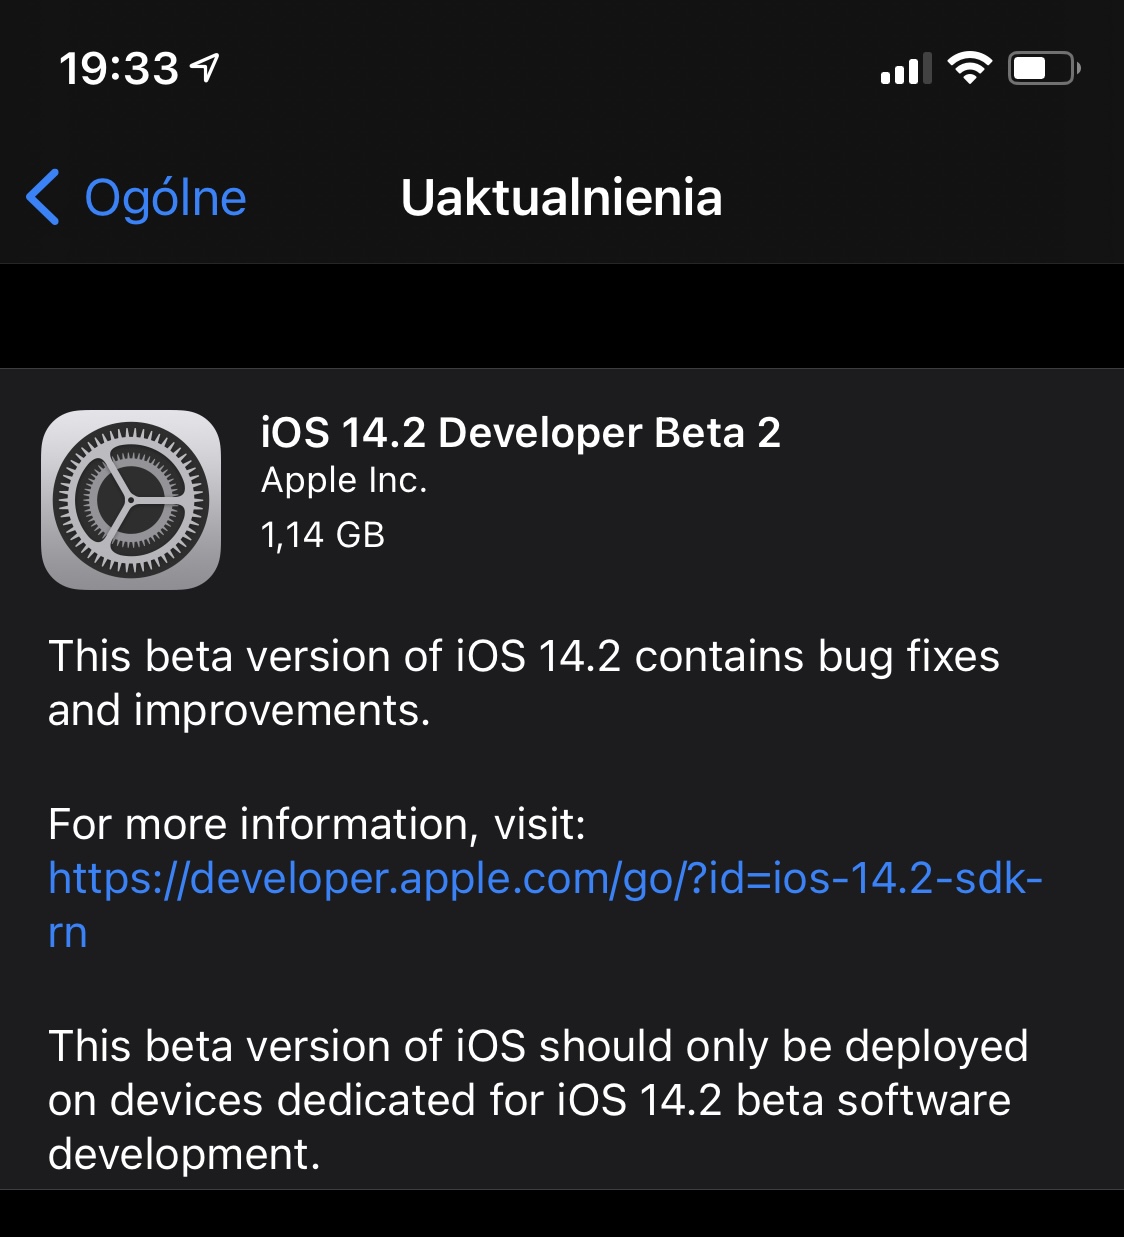 aktualizacja Apple iPhone iOS 14.2 beta 2 co nowego wykaz nowości zmiany kiedy premiera iPadOS 14.2 beta 2